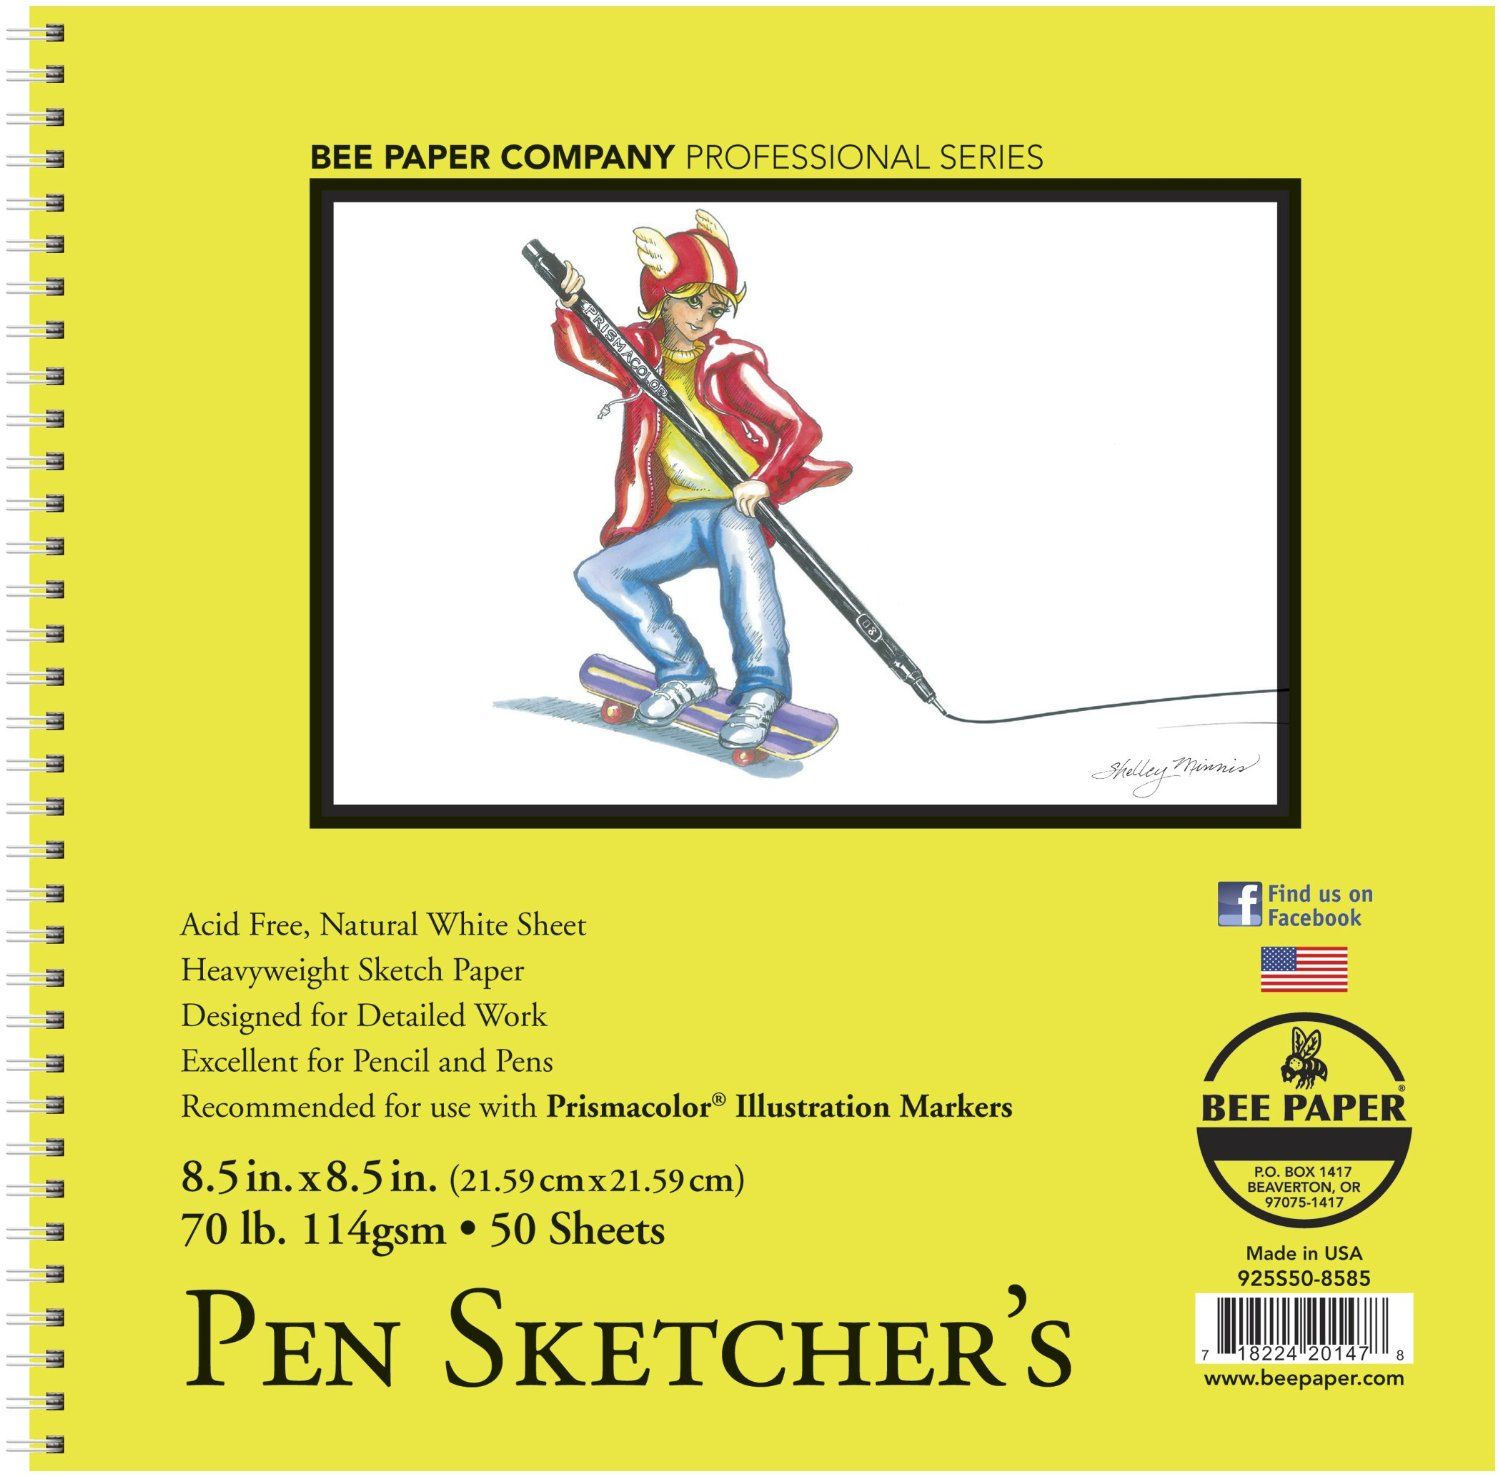 Bee Paper Pen Sketcher's 50 Sheets, 70 lb Pad - 8.5 x 8.5 inch